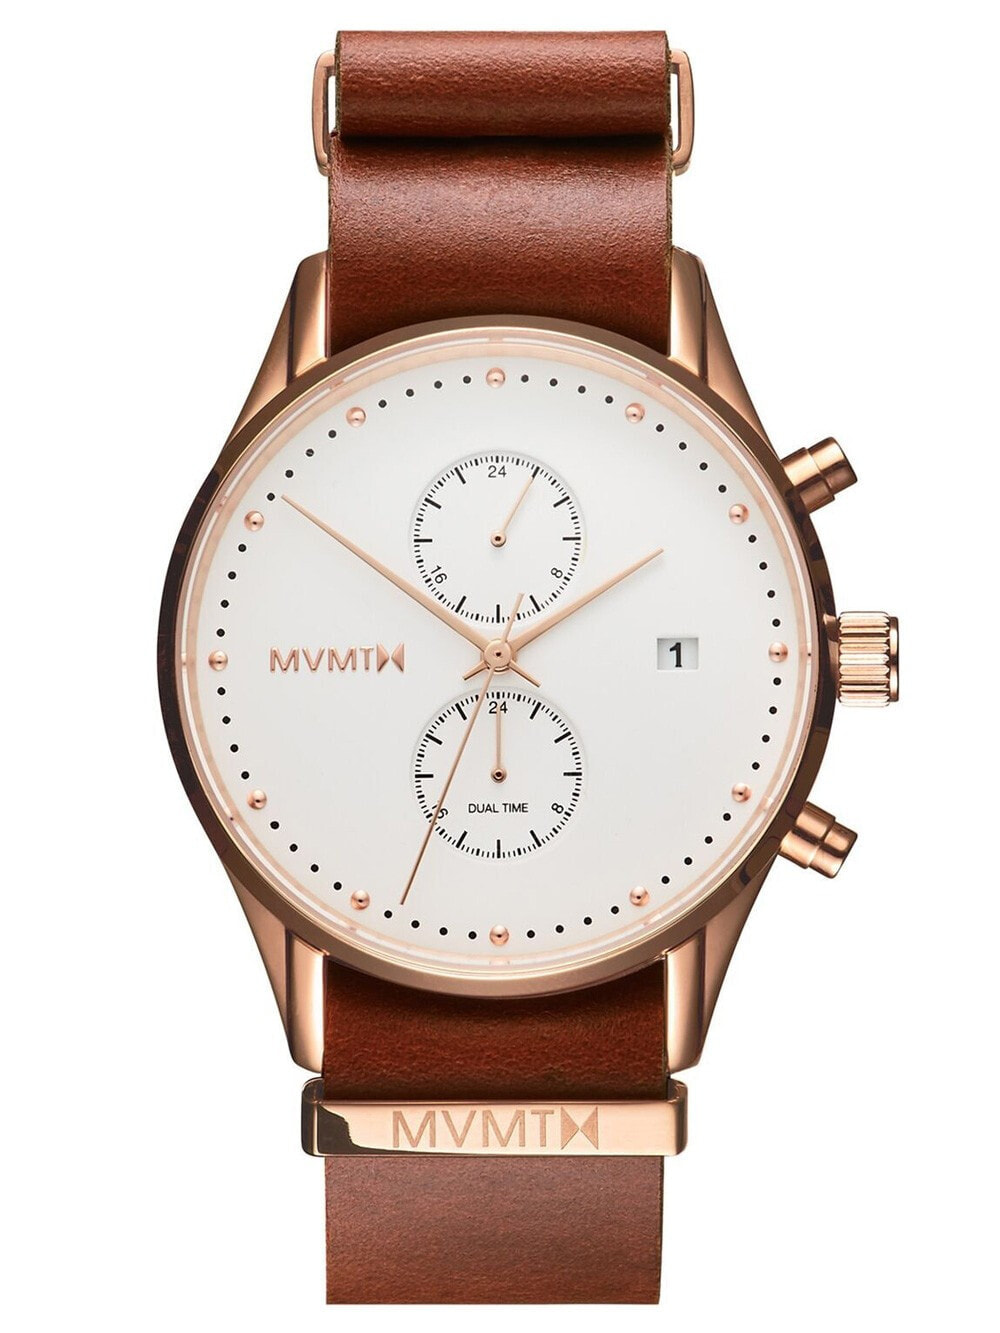 Мужские наручные часы с коричневым кожаным ремешком MVMT MV01-RGNA2 Voyager Rosewood Mens 42mm 10ATM